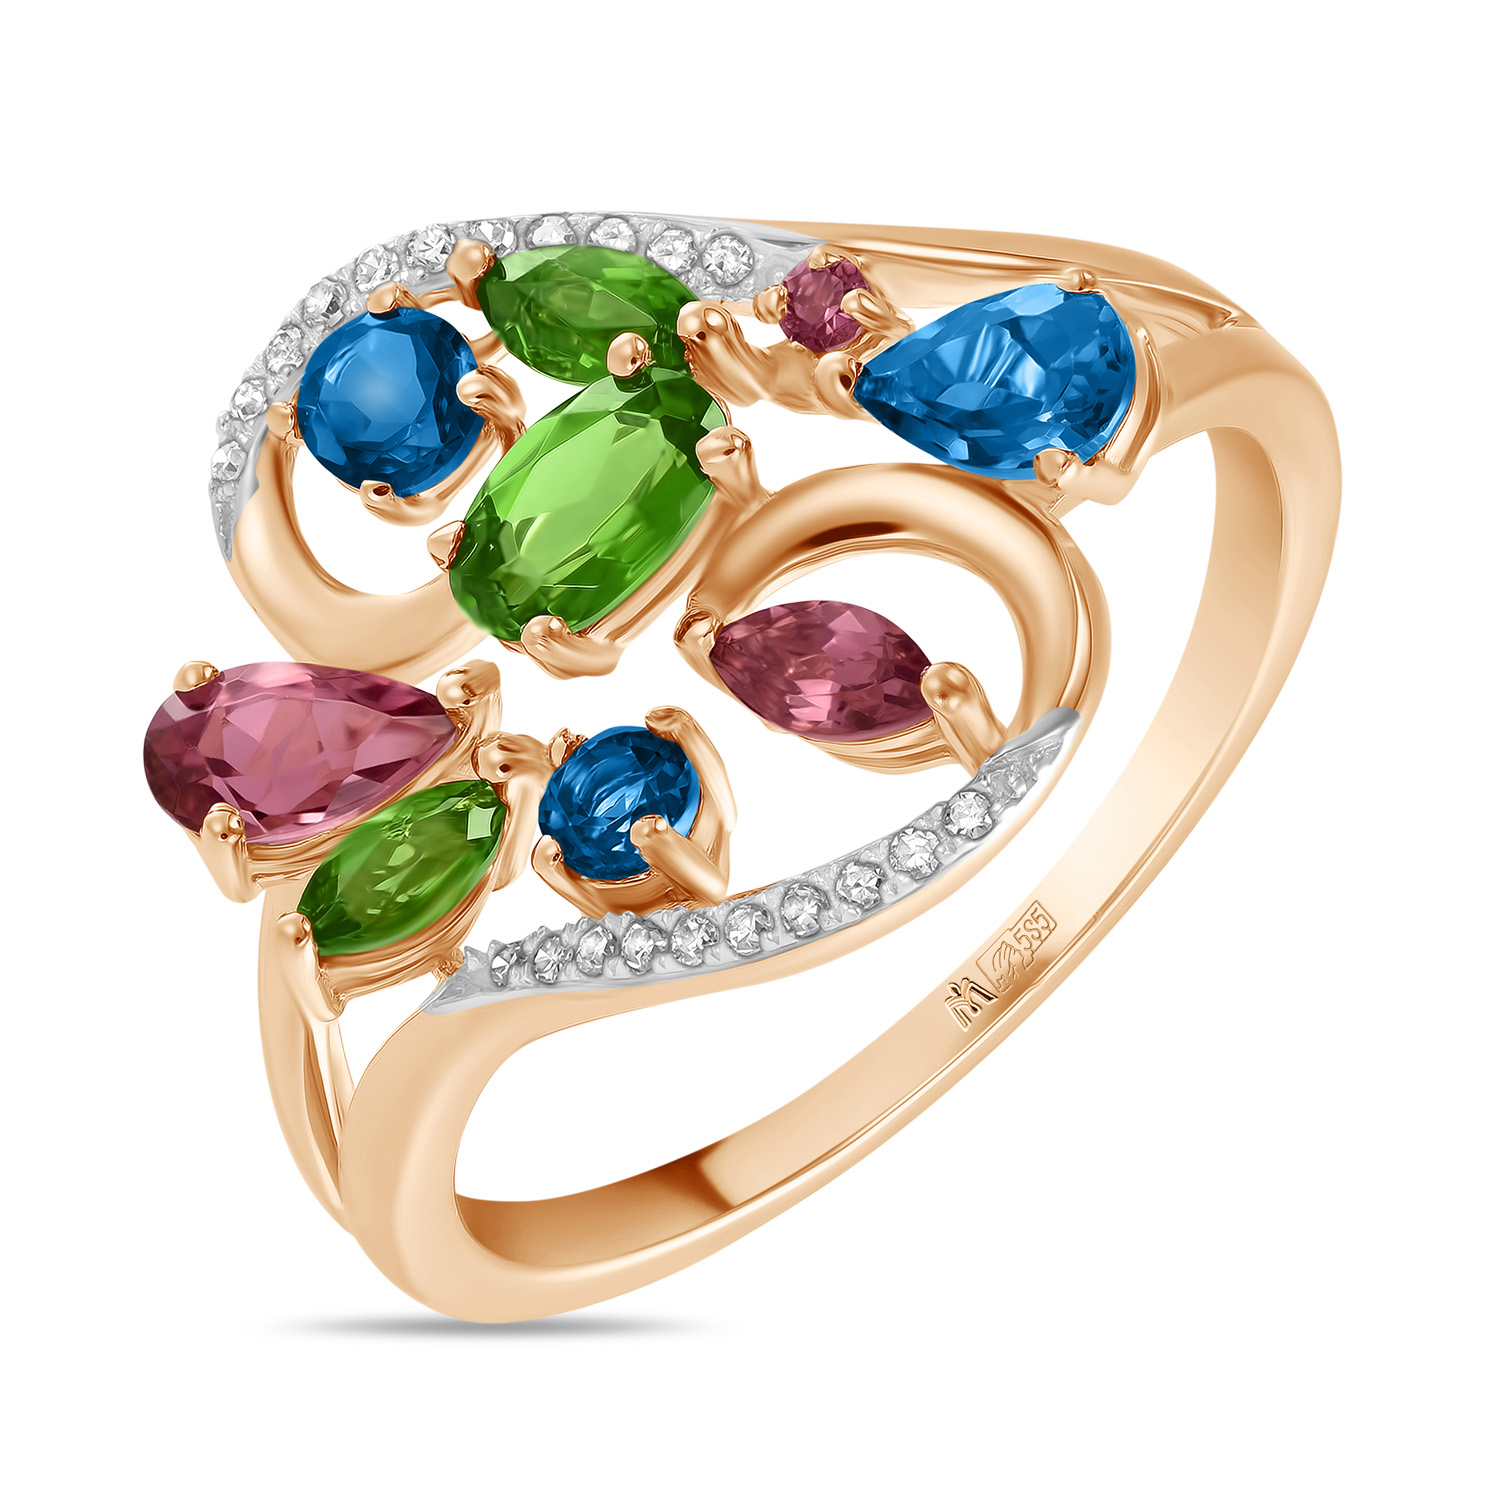 Кольца МЮЗ Золотое кольцо с топазом, бриллиантами, турмалином и хромдиопсидами кольца мюз золотое кольцо с бриллиантами и турмалином